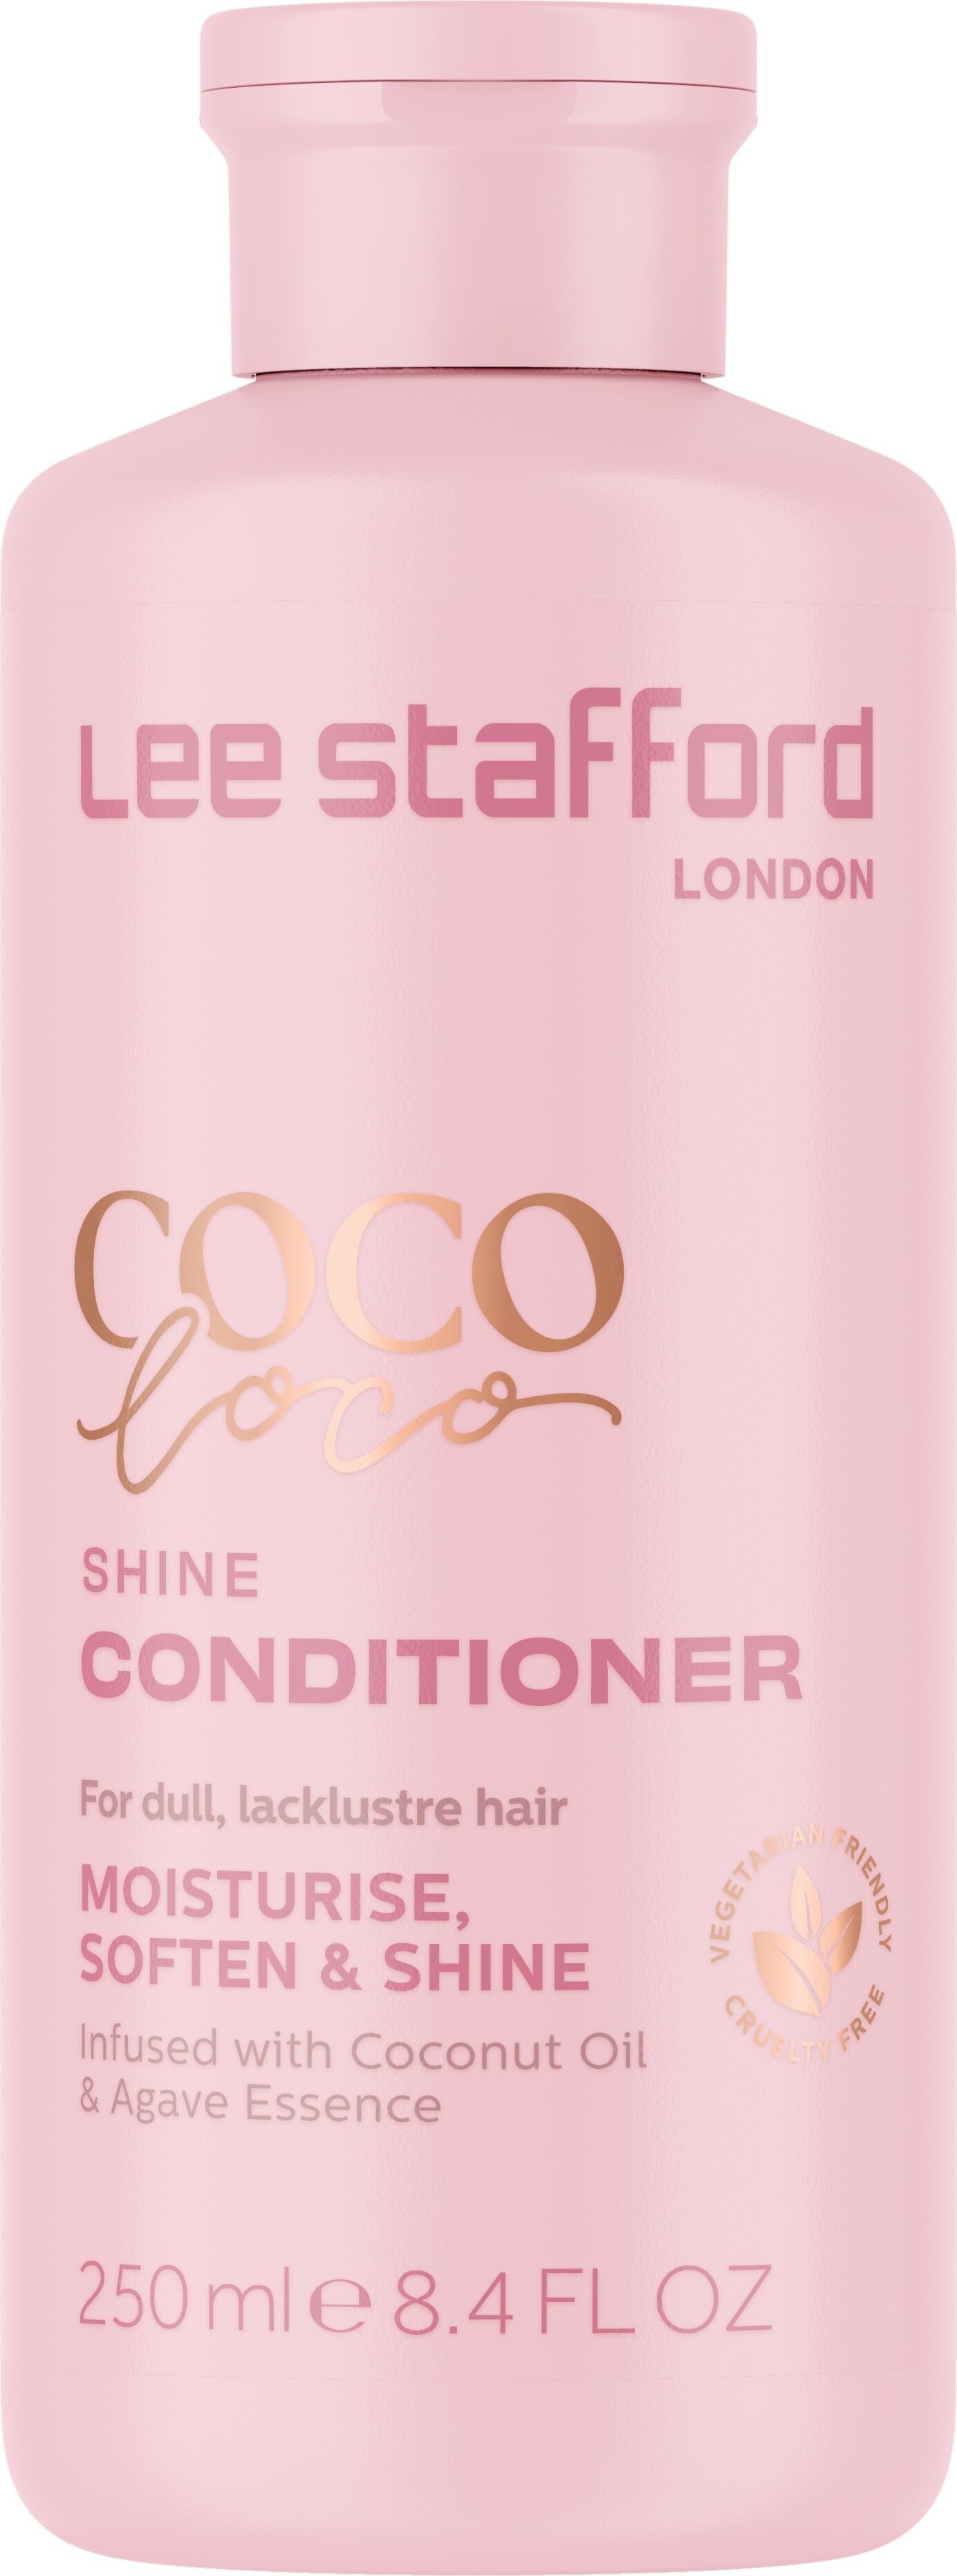 Lee Stafford - Coco Loco Shine Conditioner - 250 Ml